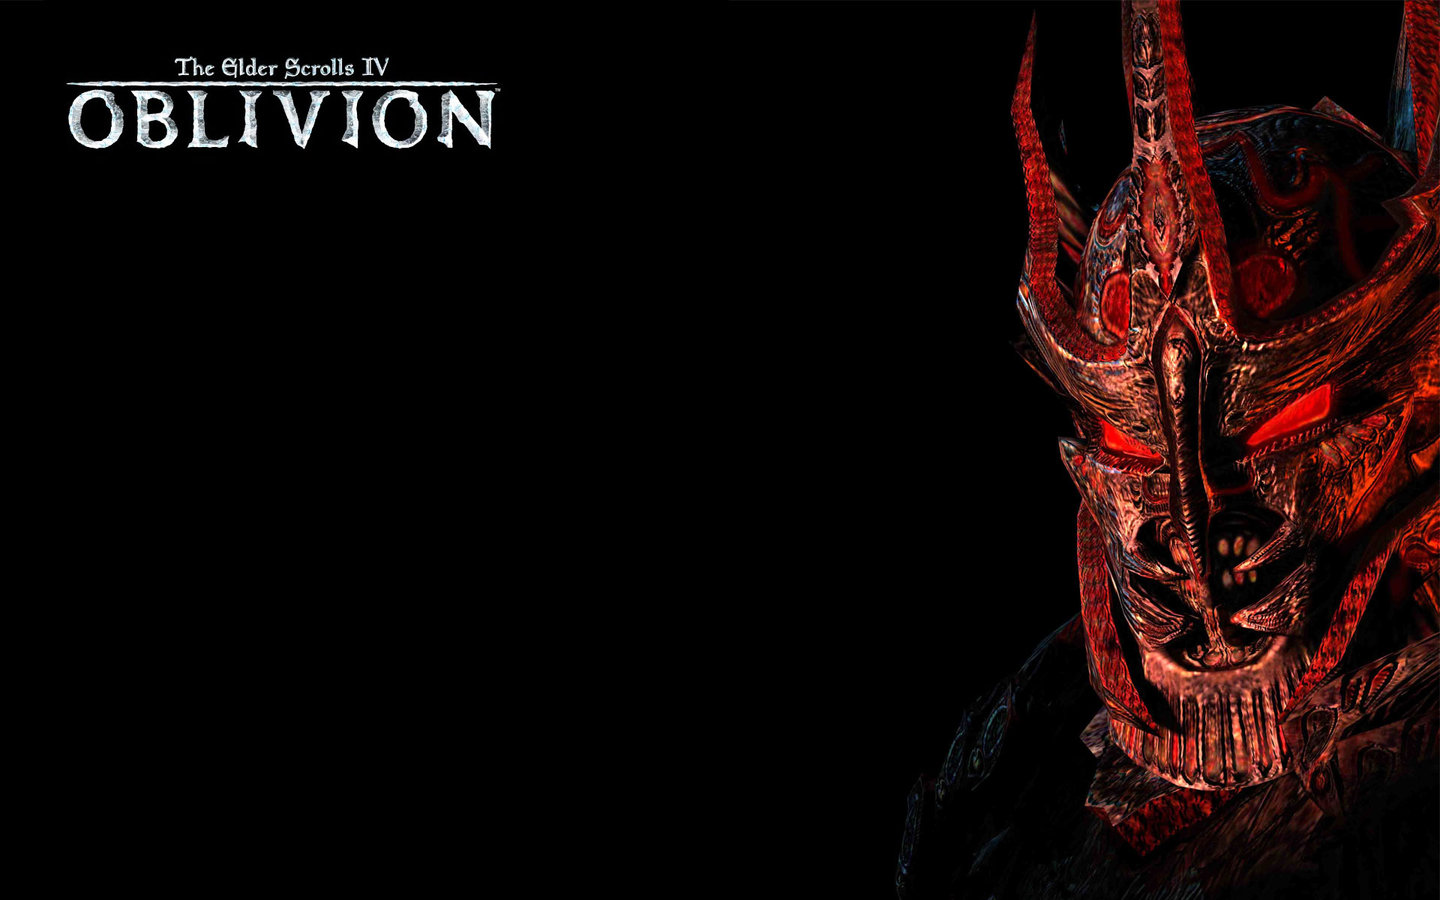 Wallpaper: The Elder Scrolls IV: Oblivion 360 (1 of 2)